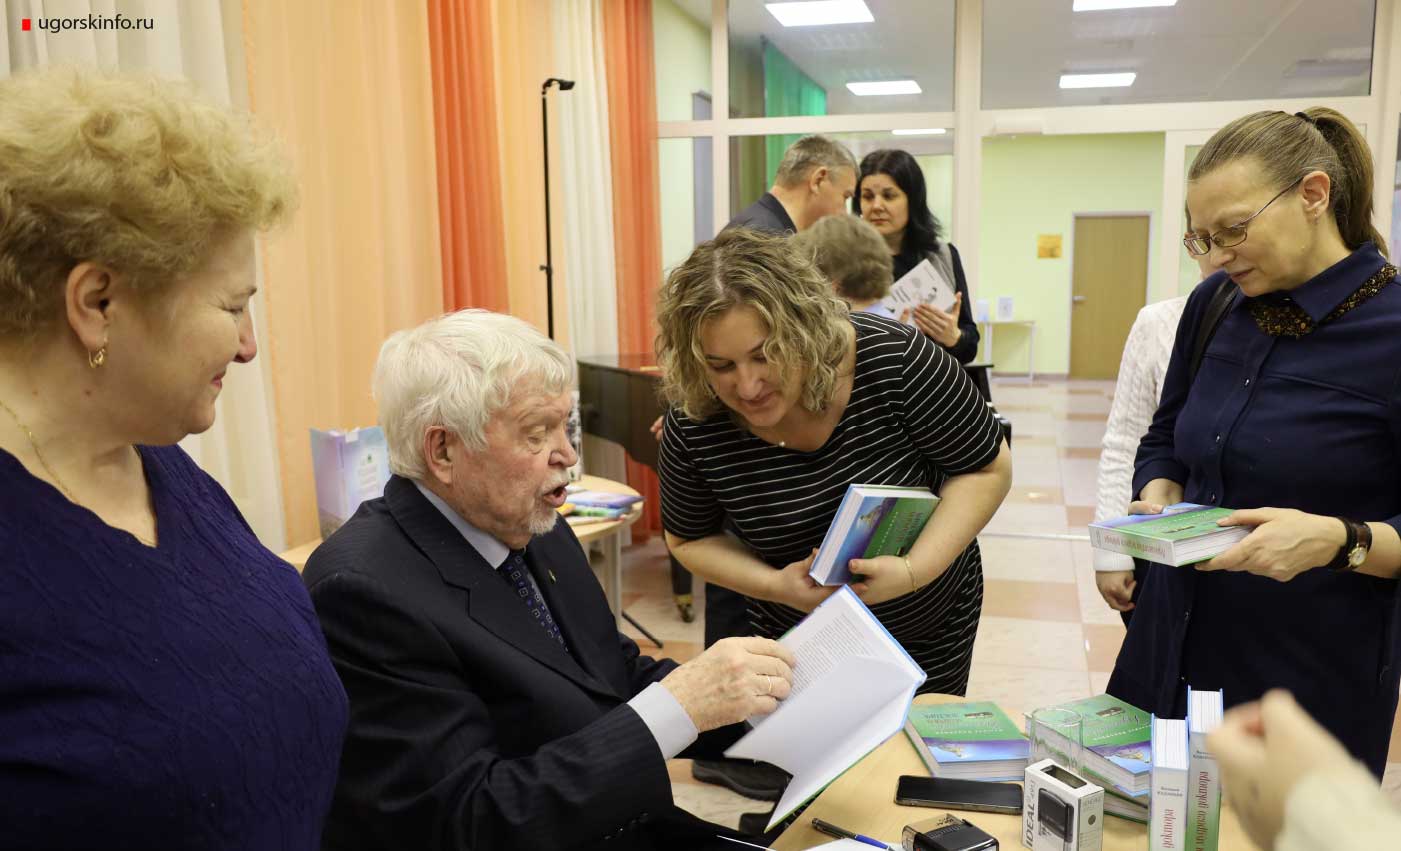 В библиотечном центре презентовали книги Валерия Каданцева.